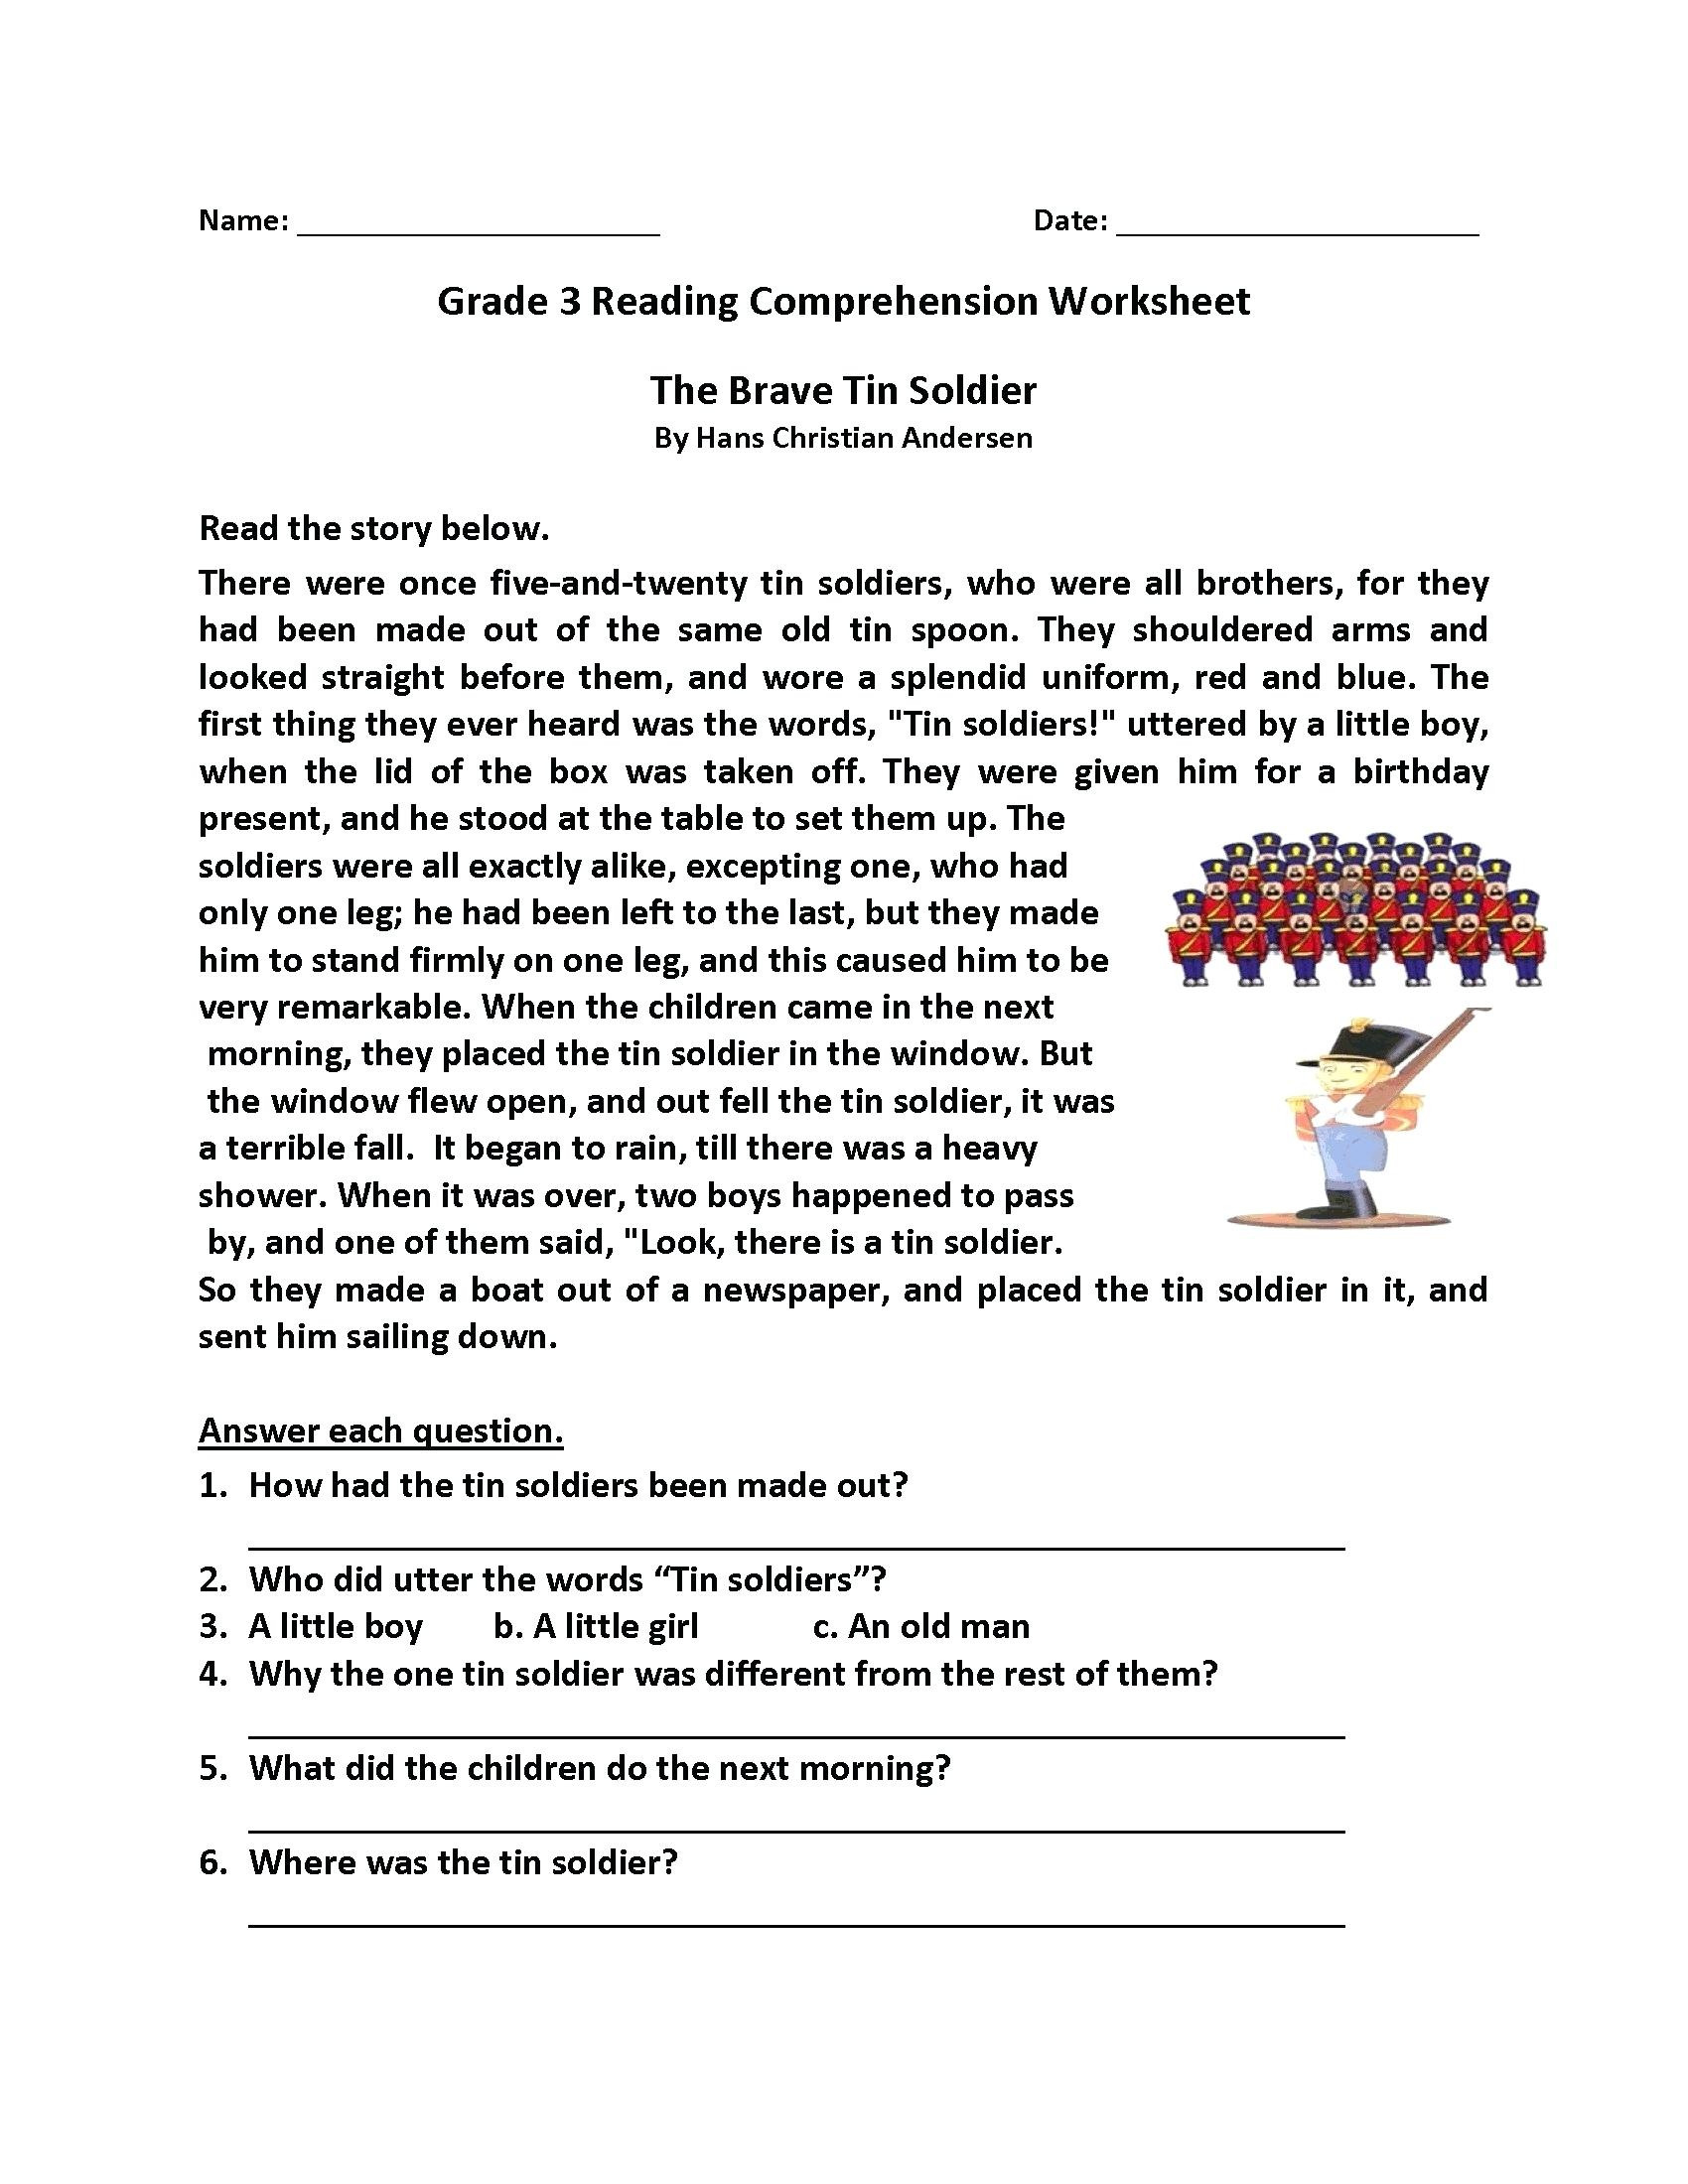 comprehension-worksheets-grade-8-db-excel